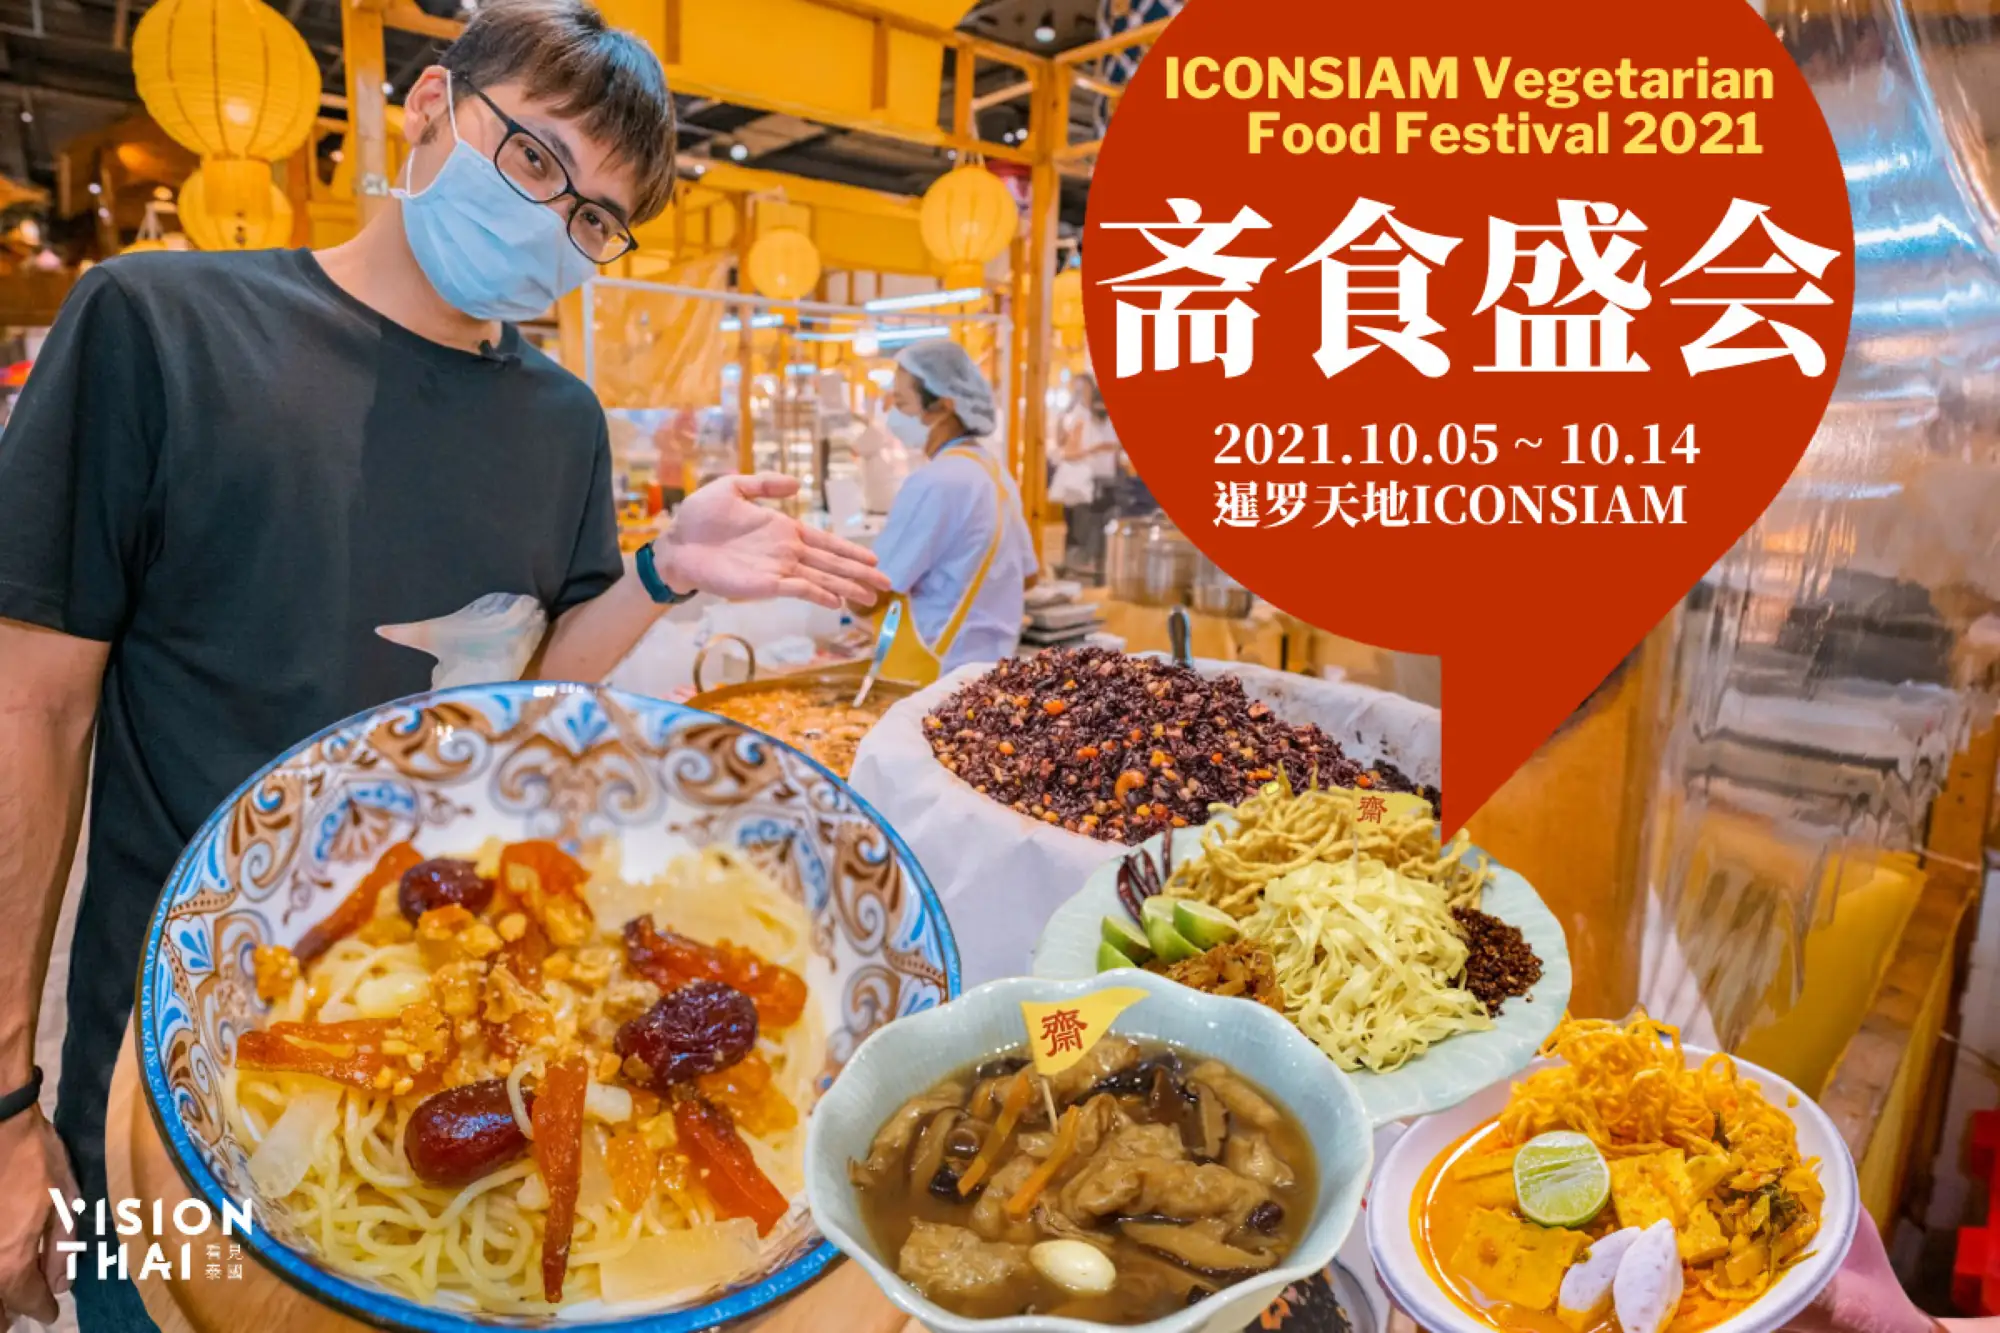 即日起至10月14日曼谷ICONSIAM展开一年一度的斋食盛会